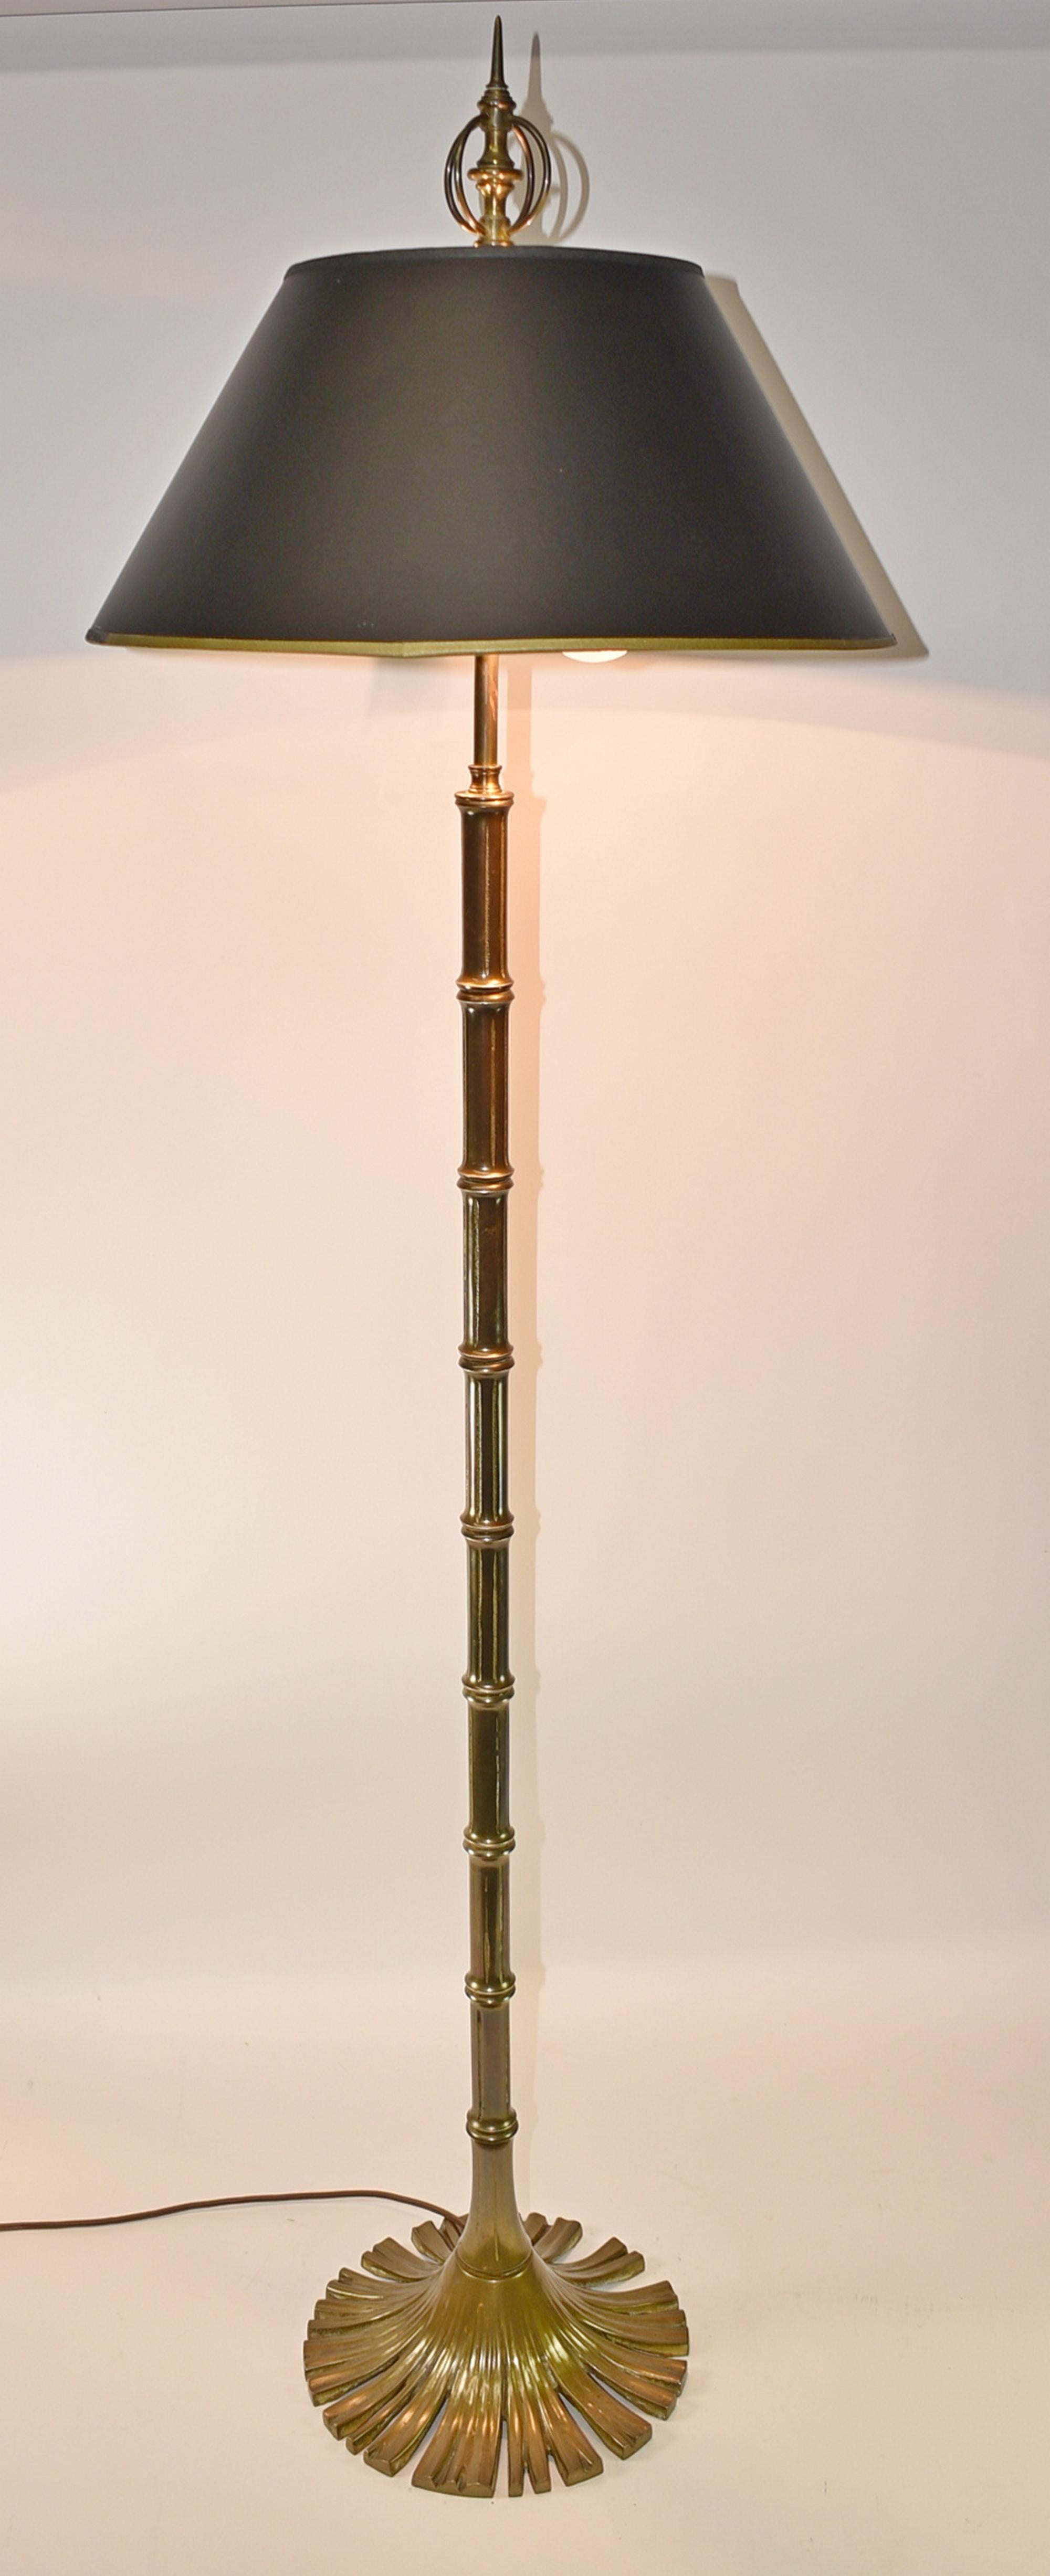 Lampadaire Chapman en laiton et bambou, Circa 1976. Lampe en laiton moulé avec détails en bambou. La base est un cercle de roseaux en forme d'éventail. Prises d'origine avec étiquette datée de 1976. Deux prises de courant avec chaînes de traction.